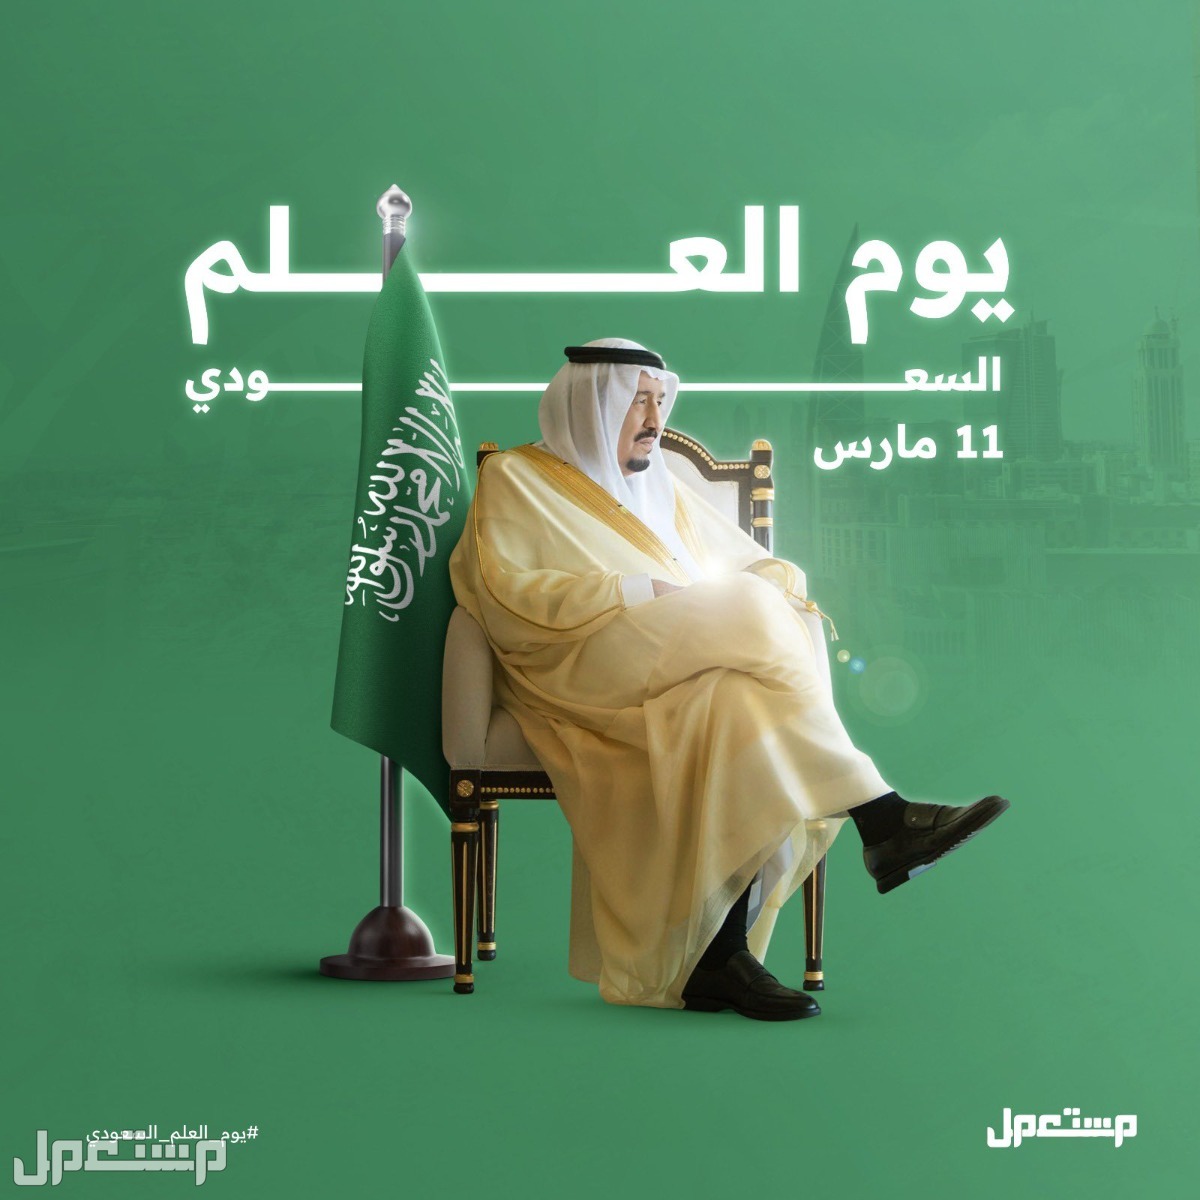 جدول فعاليات الاحتفال بيوم العلم السعودي في المدارس وإدارات التعليم في السعودية